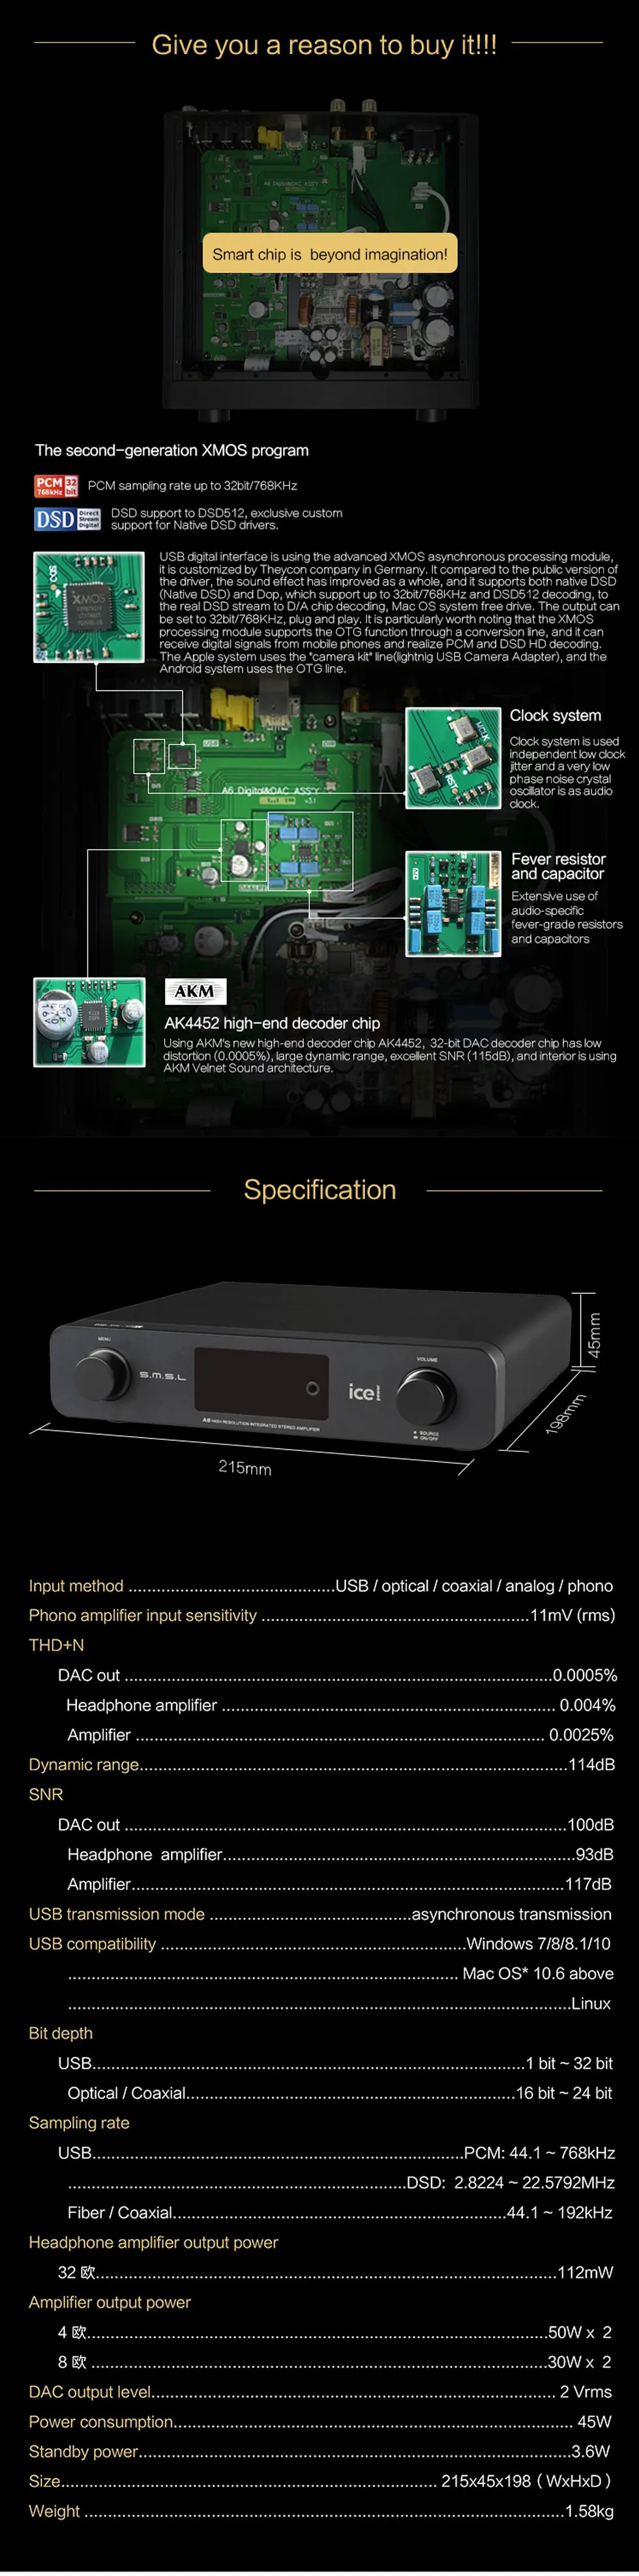 Smsl a6 усилитель аудио hi fi предусилитель мощности amplificador phono предусилитель ультракомпактный DSD, usb ЦАП ak4452 xmos usb декодер цифровой усилитель